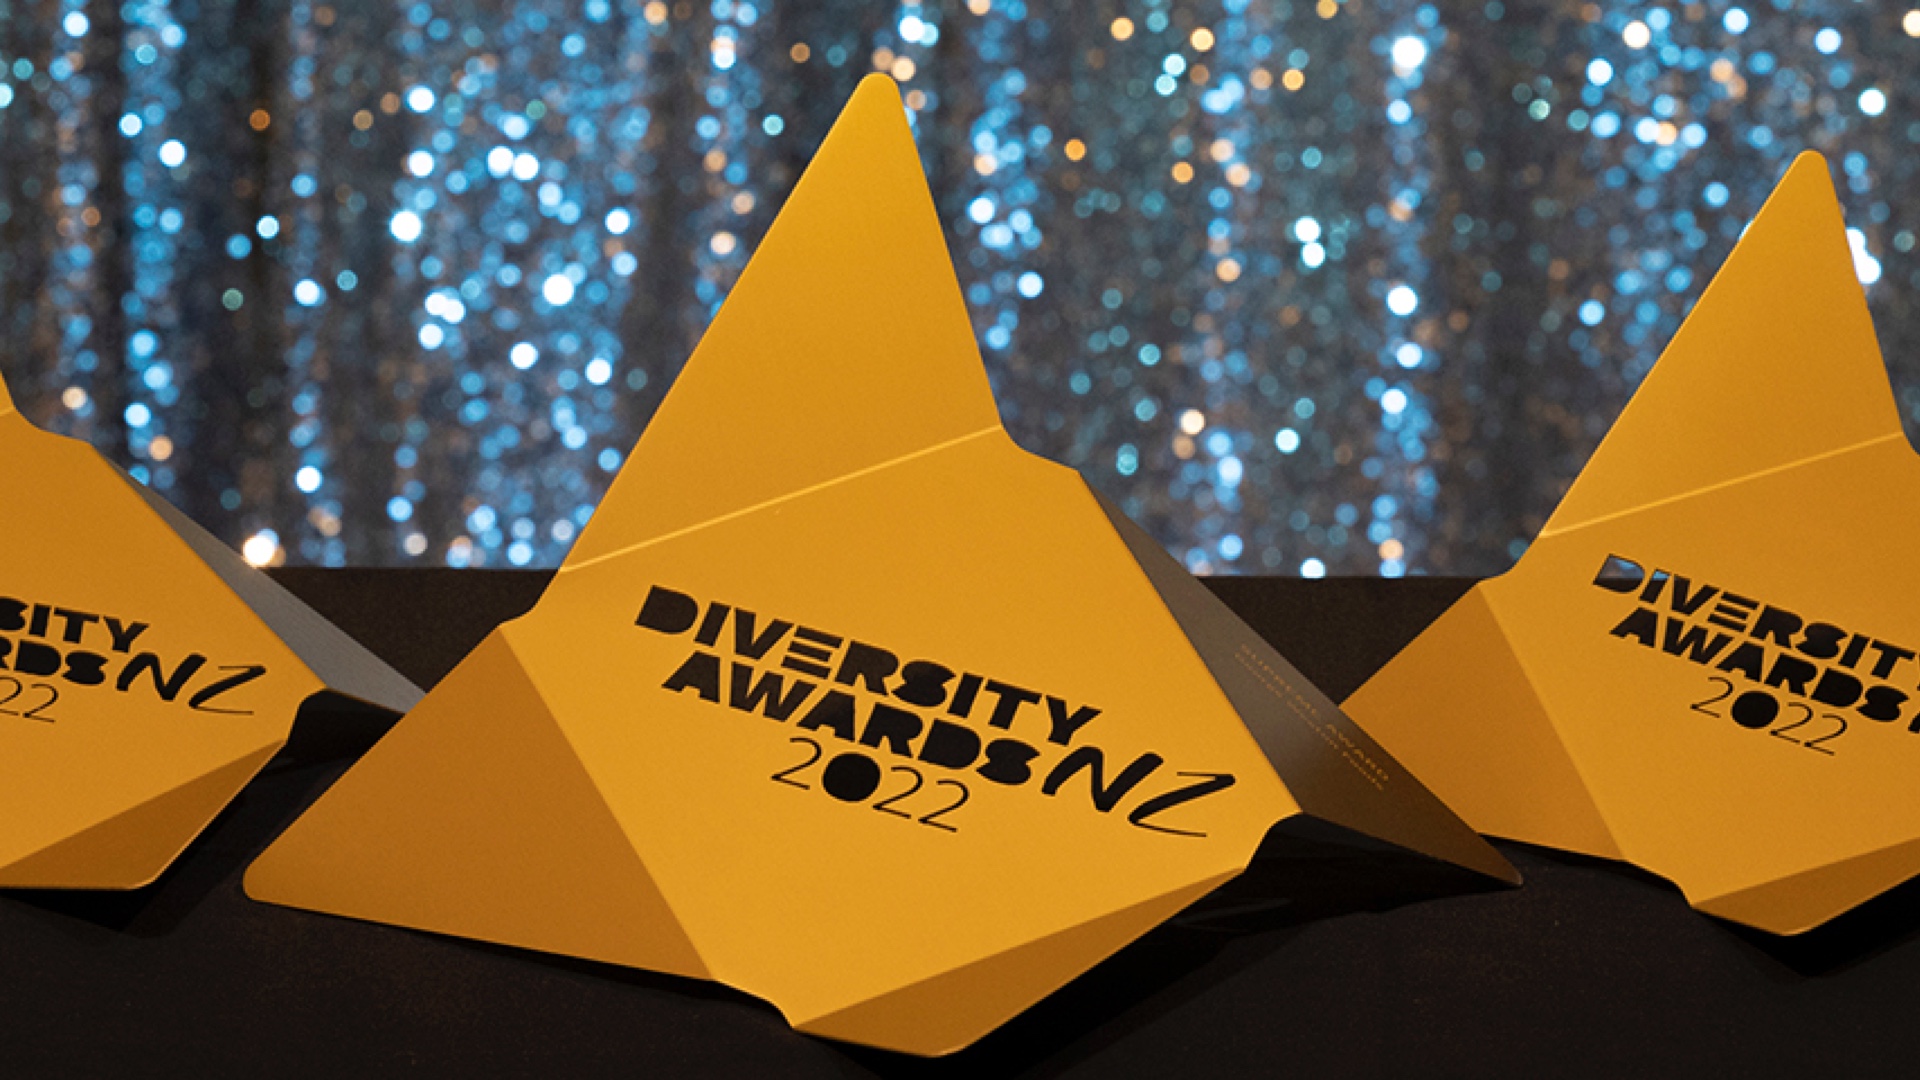 Diversity NZ Awards banner